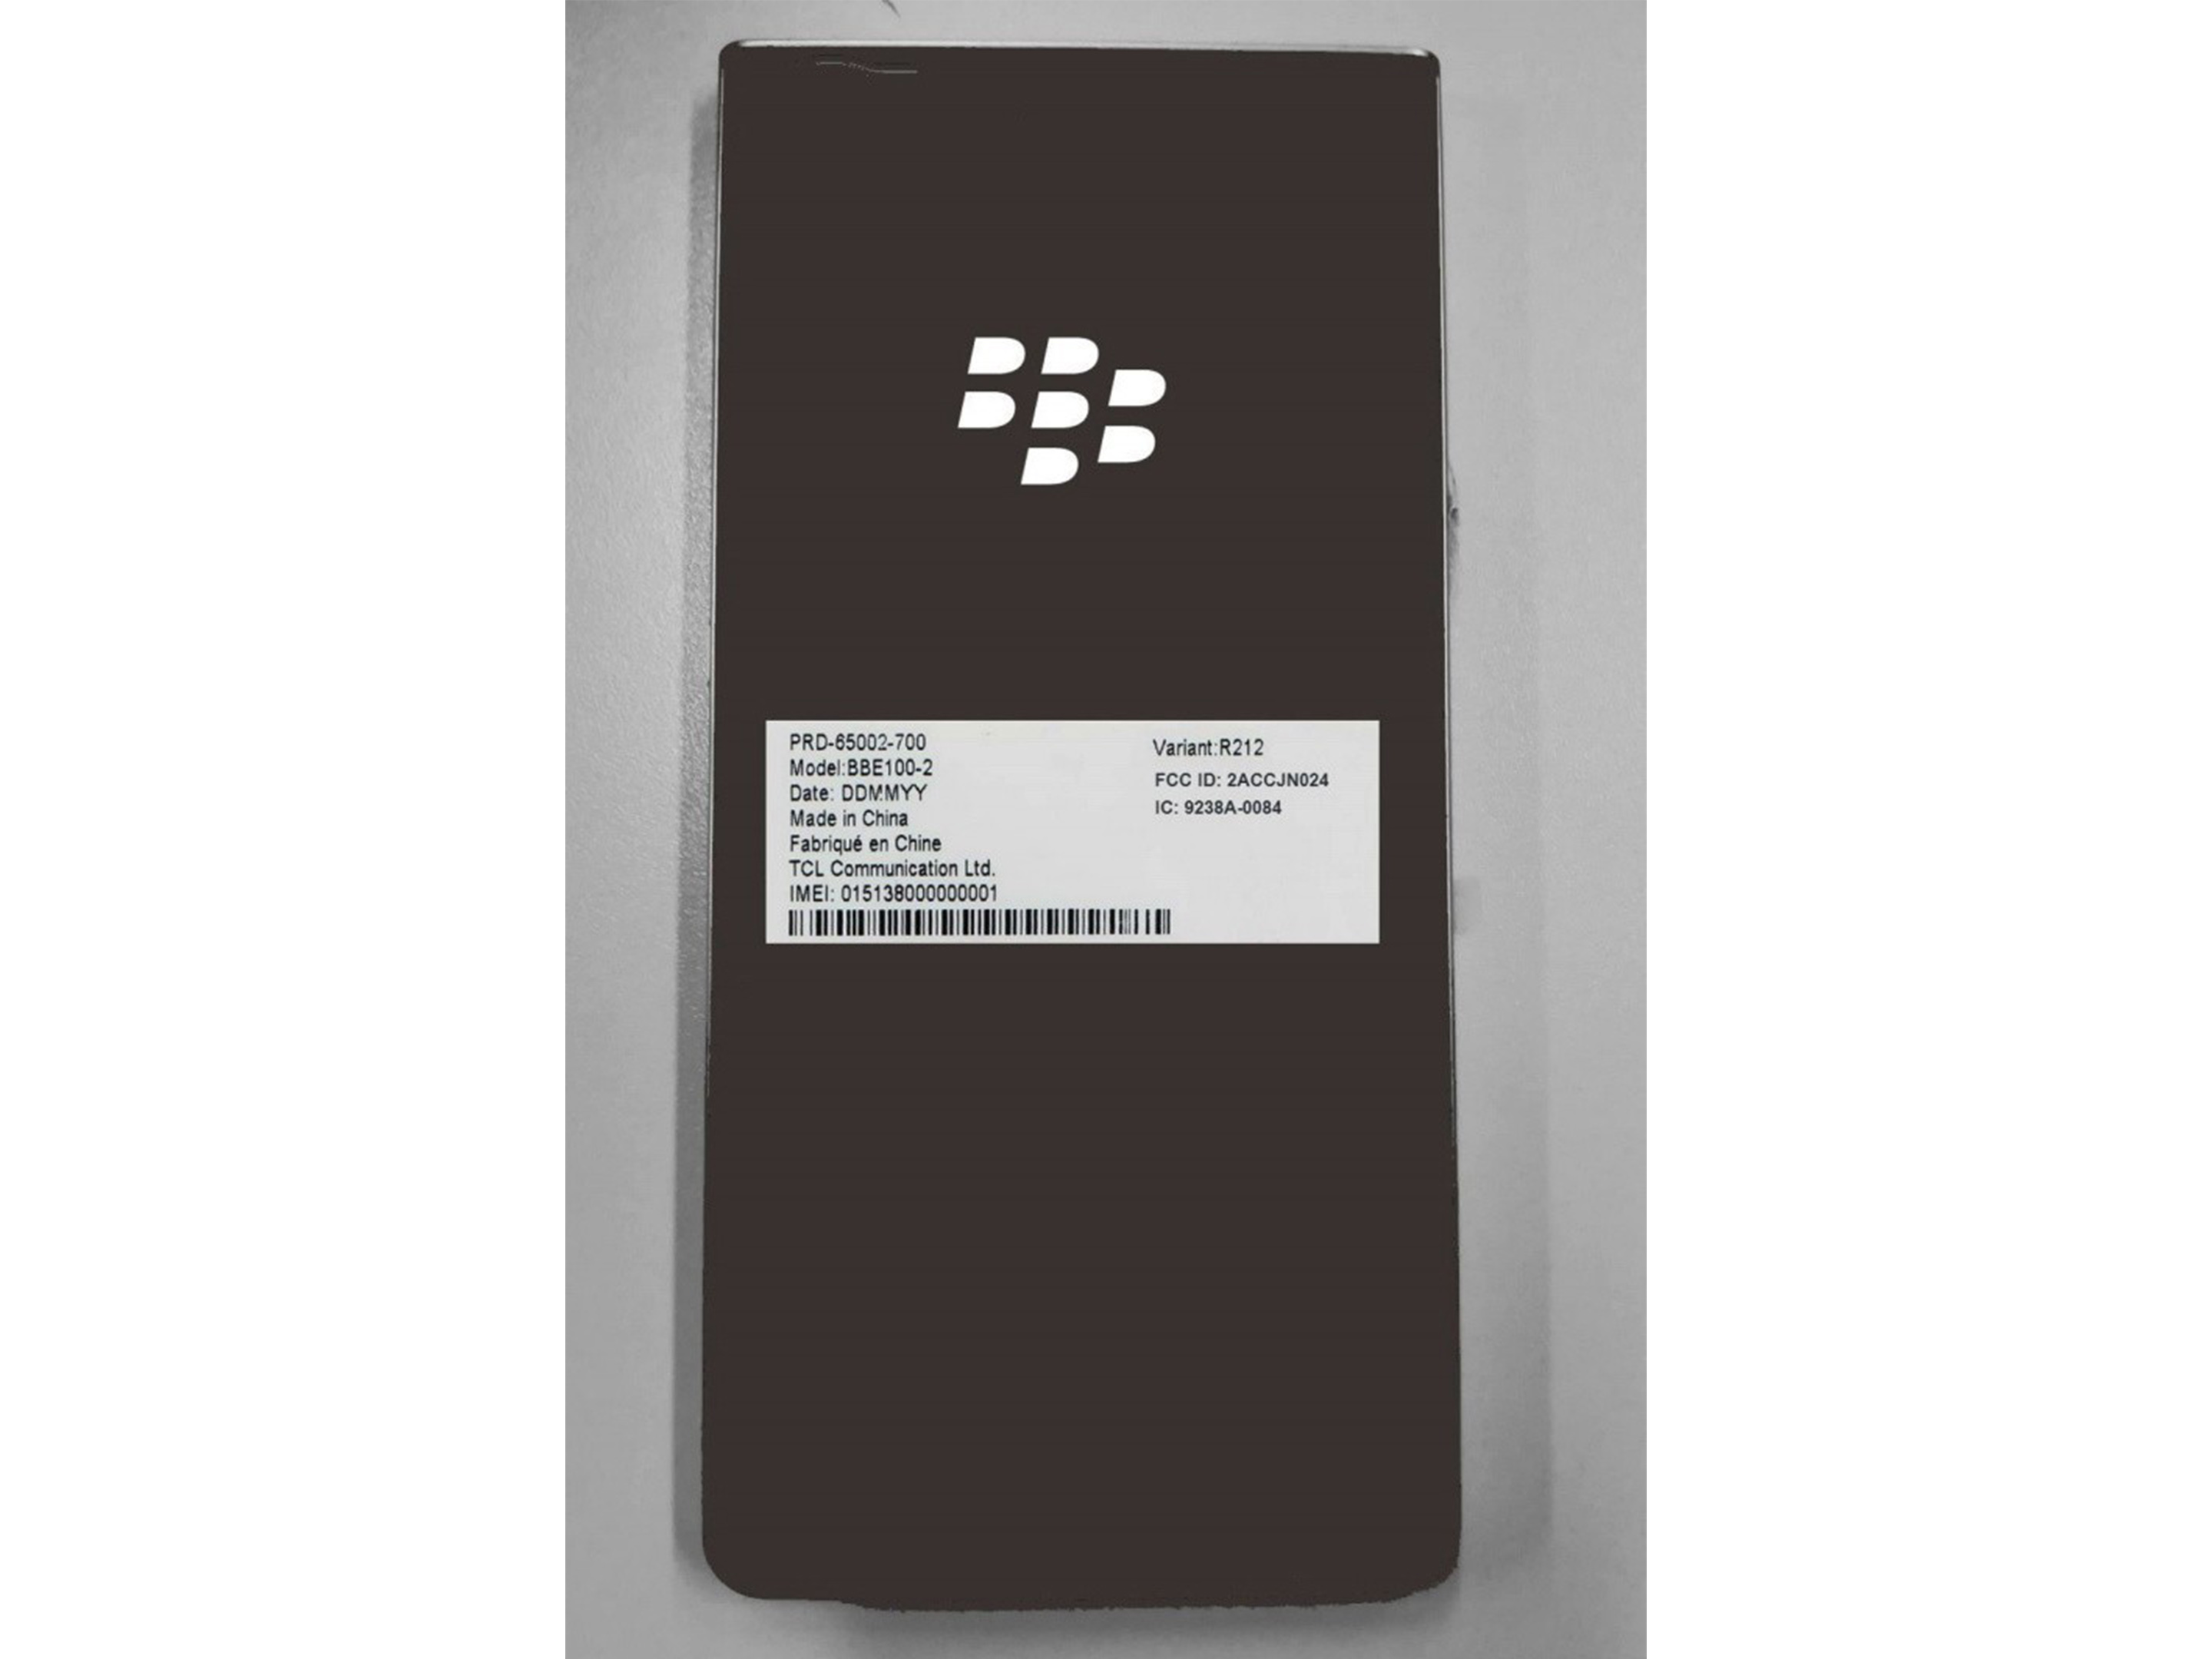 BlackBerry KEY2 FCC filing